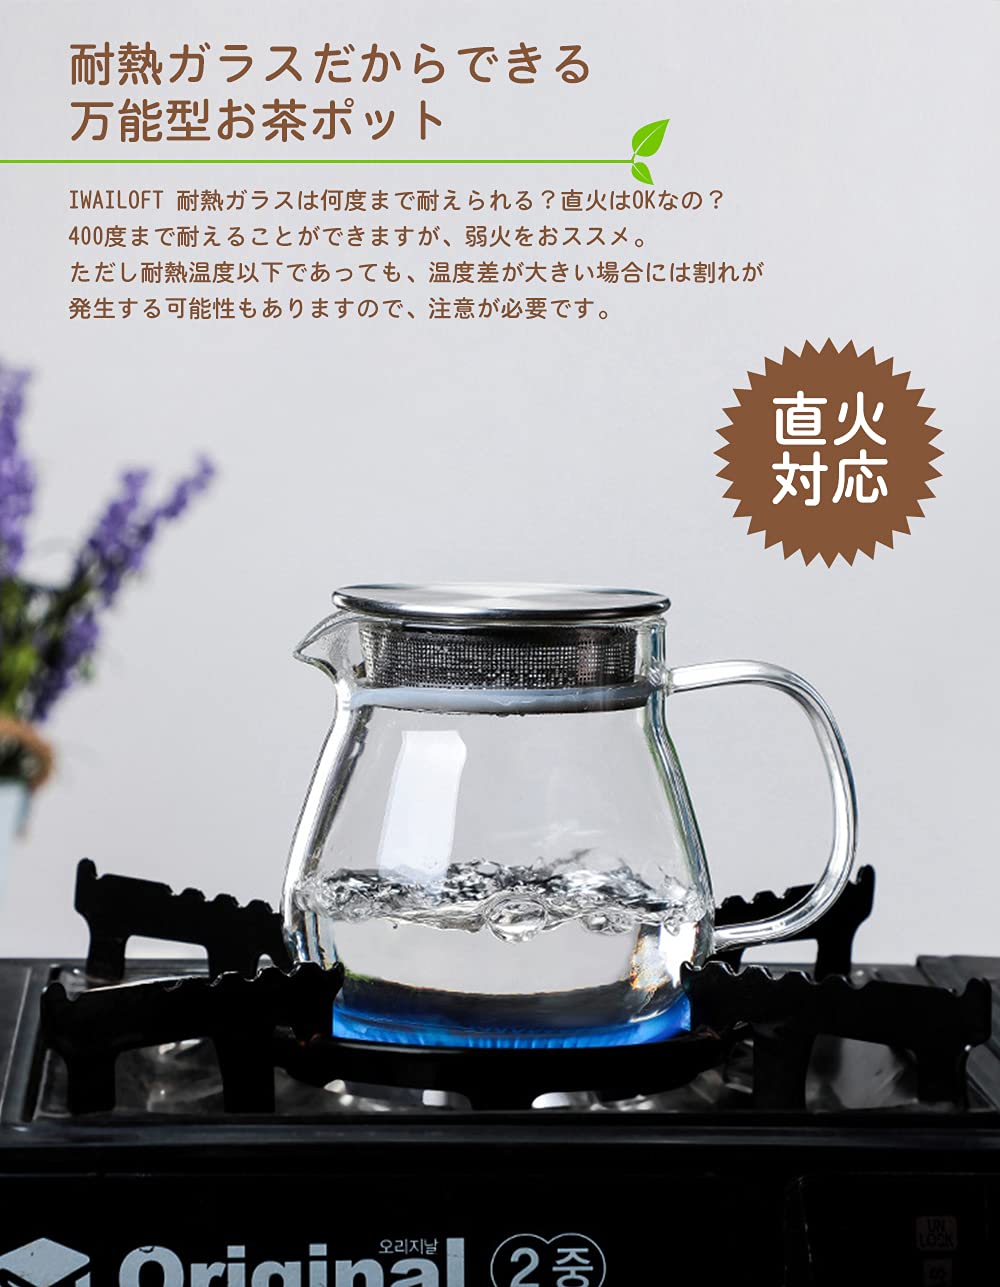 IwaiLoft ワンタッチ  ティーポット 耐熱ガラス ガラスポット ガラス急須 紅茶ポット 2~3人用扱いやすいティーポット ミルクピッチャー ジャグとしても便利 直火可 送料無料 食洗機対応 (450mL-700mL) リピ買い決定の人気アイテム